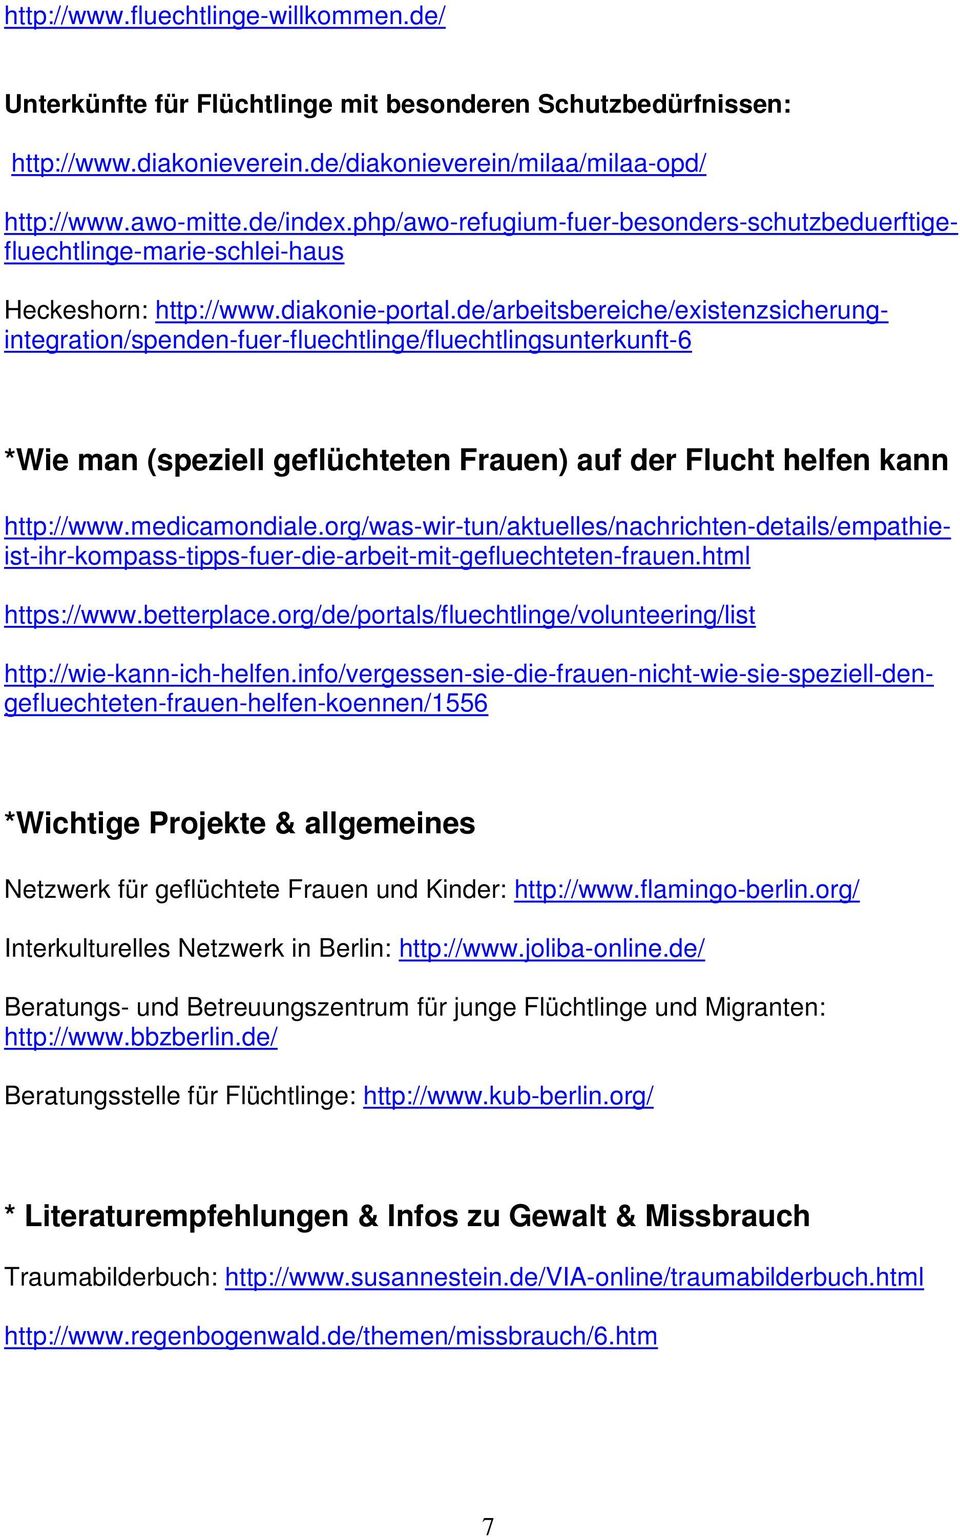 org/de/portals/fluechtlinge/volunteering/list Heckeshorn: http://www.diakonie-portal.de/arbeitsbereiche/existenzsicherungintegration/spenden-fuer-fluechtlinge/fluechtlingsunterkunft-6 http://www.